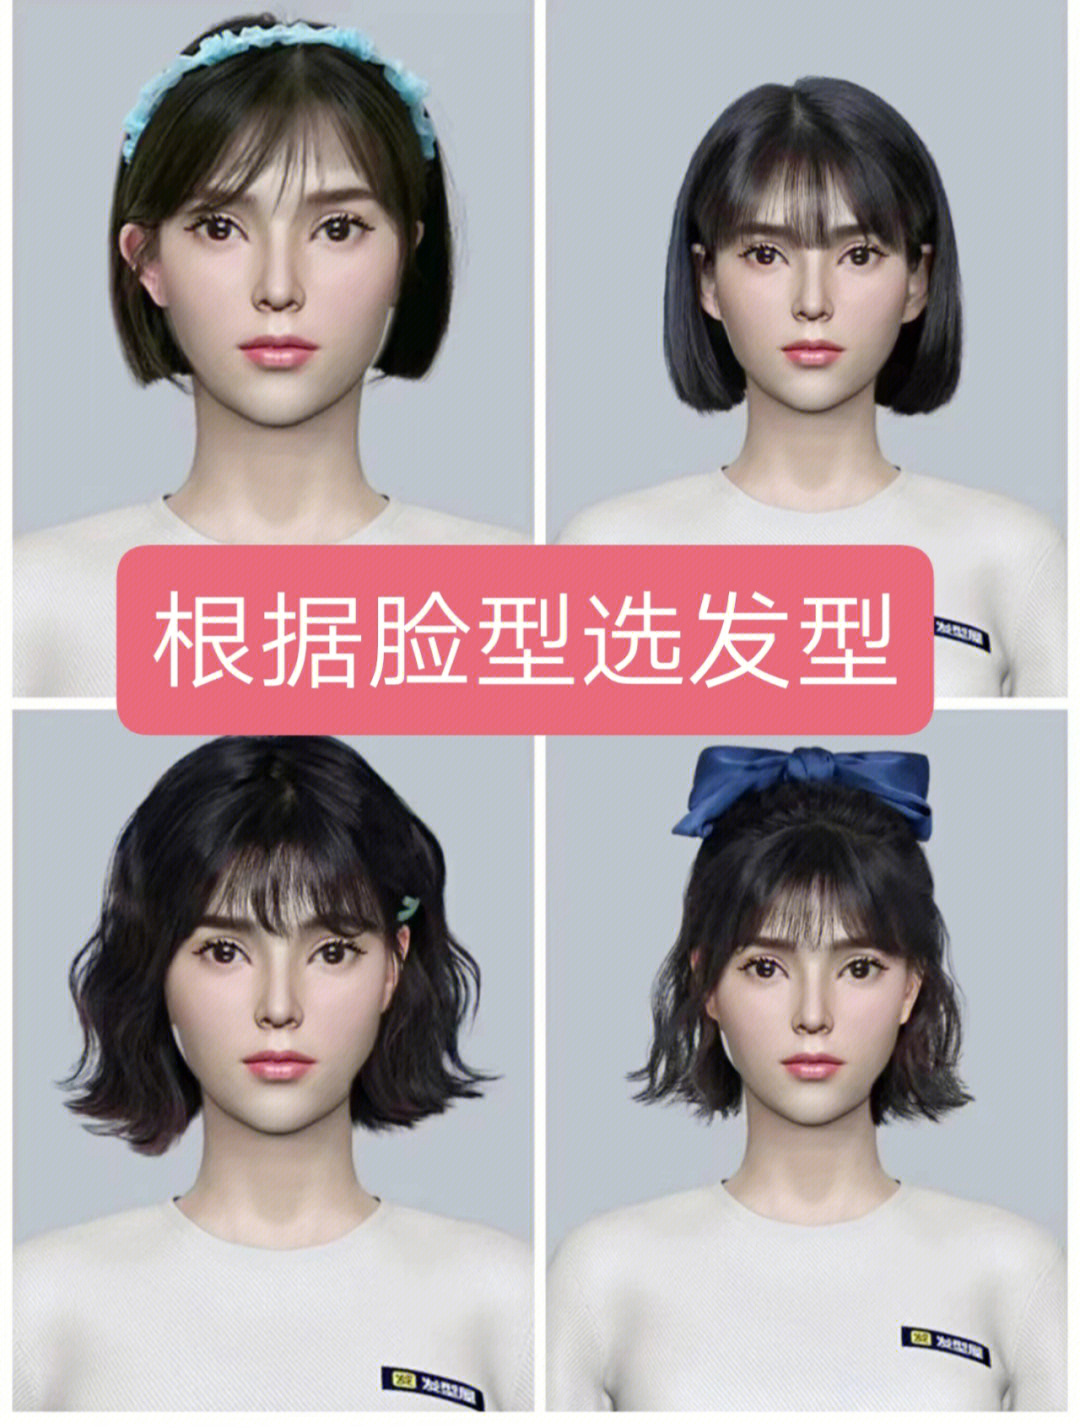 智能测脸型软件推荐根据脸型设计发型